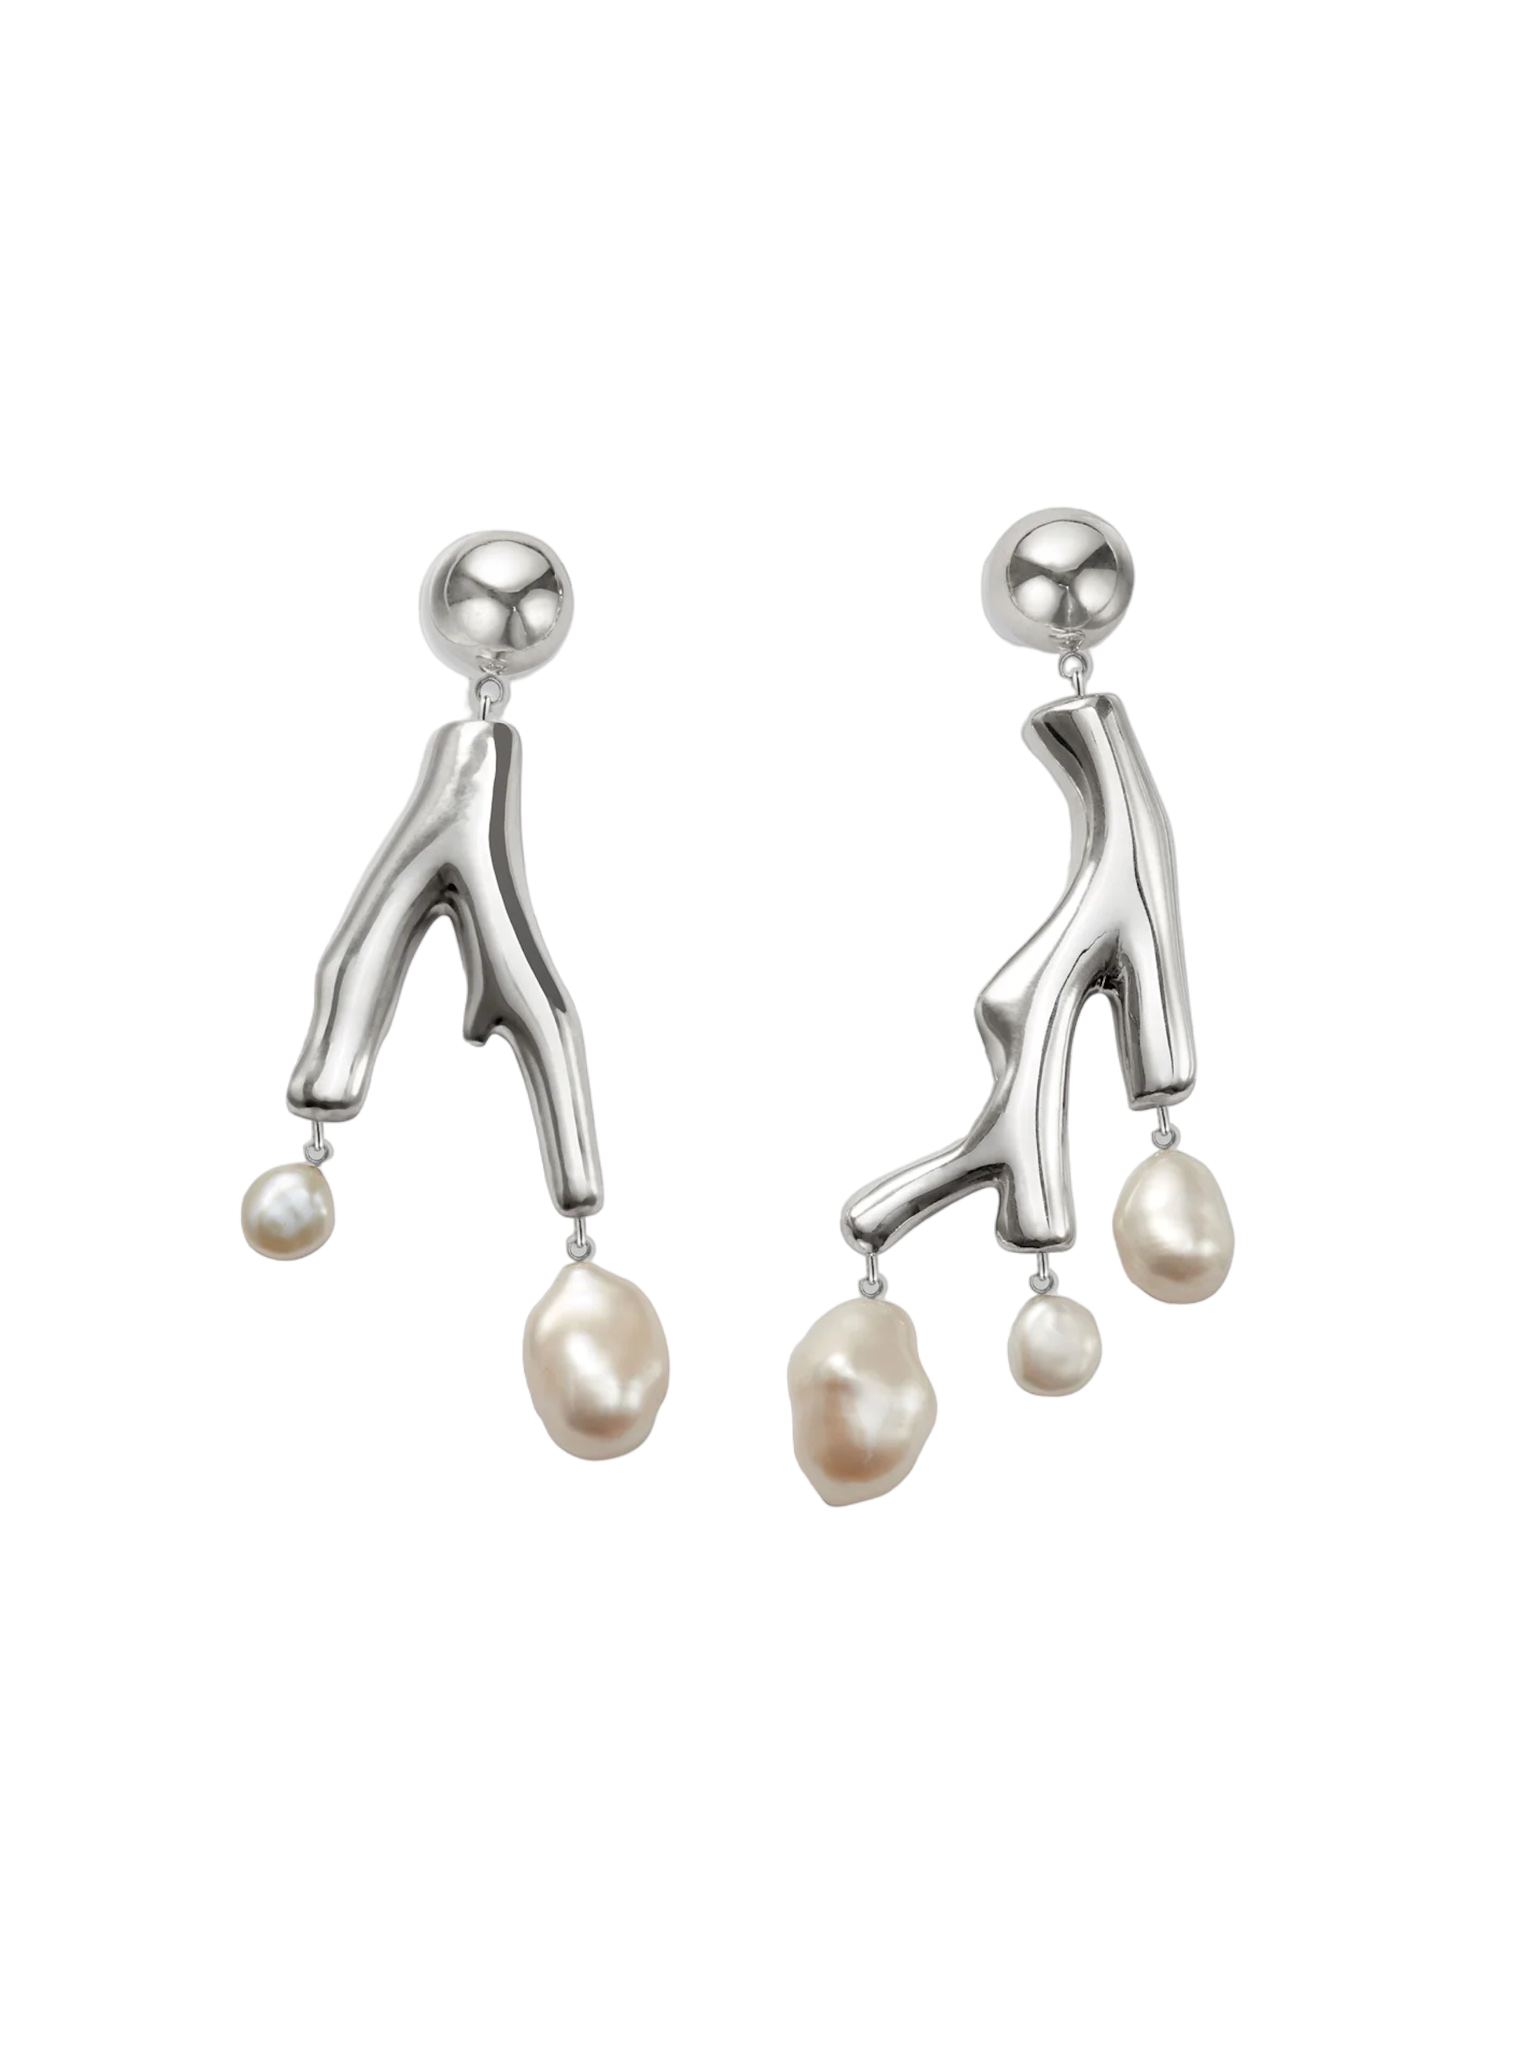 Baroque coral earrings